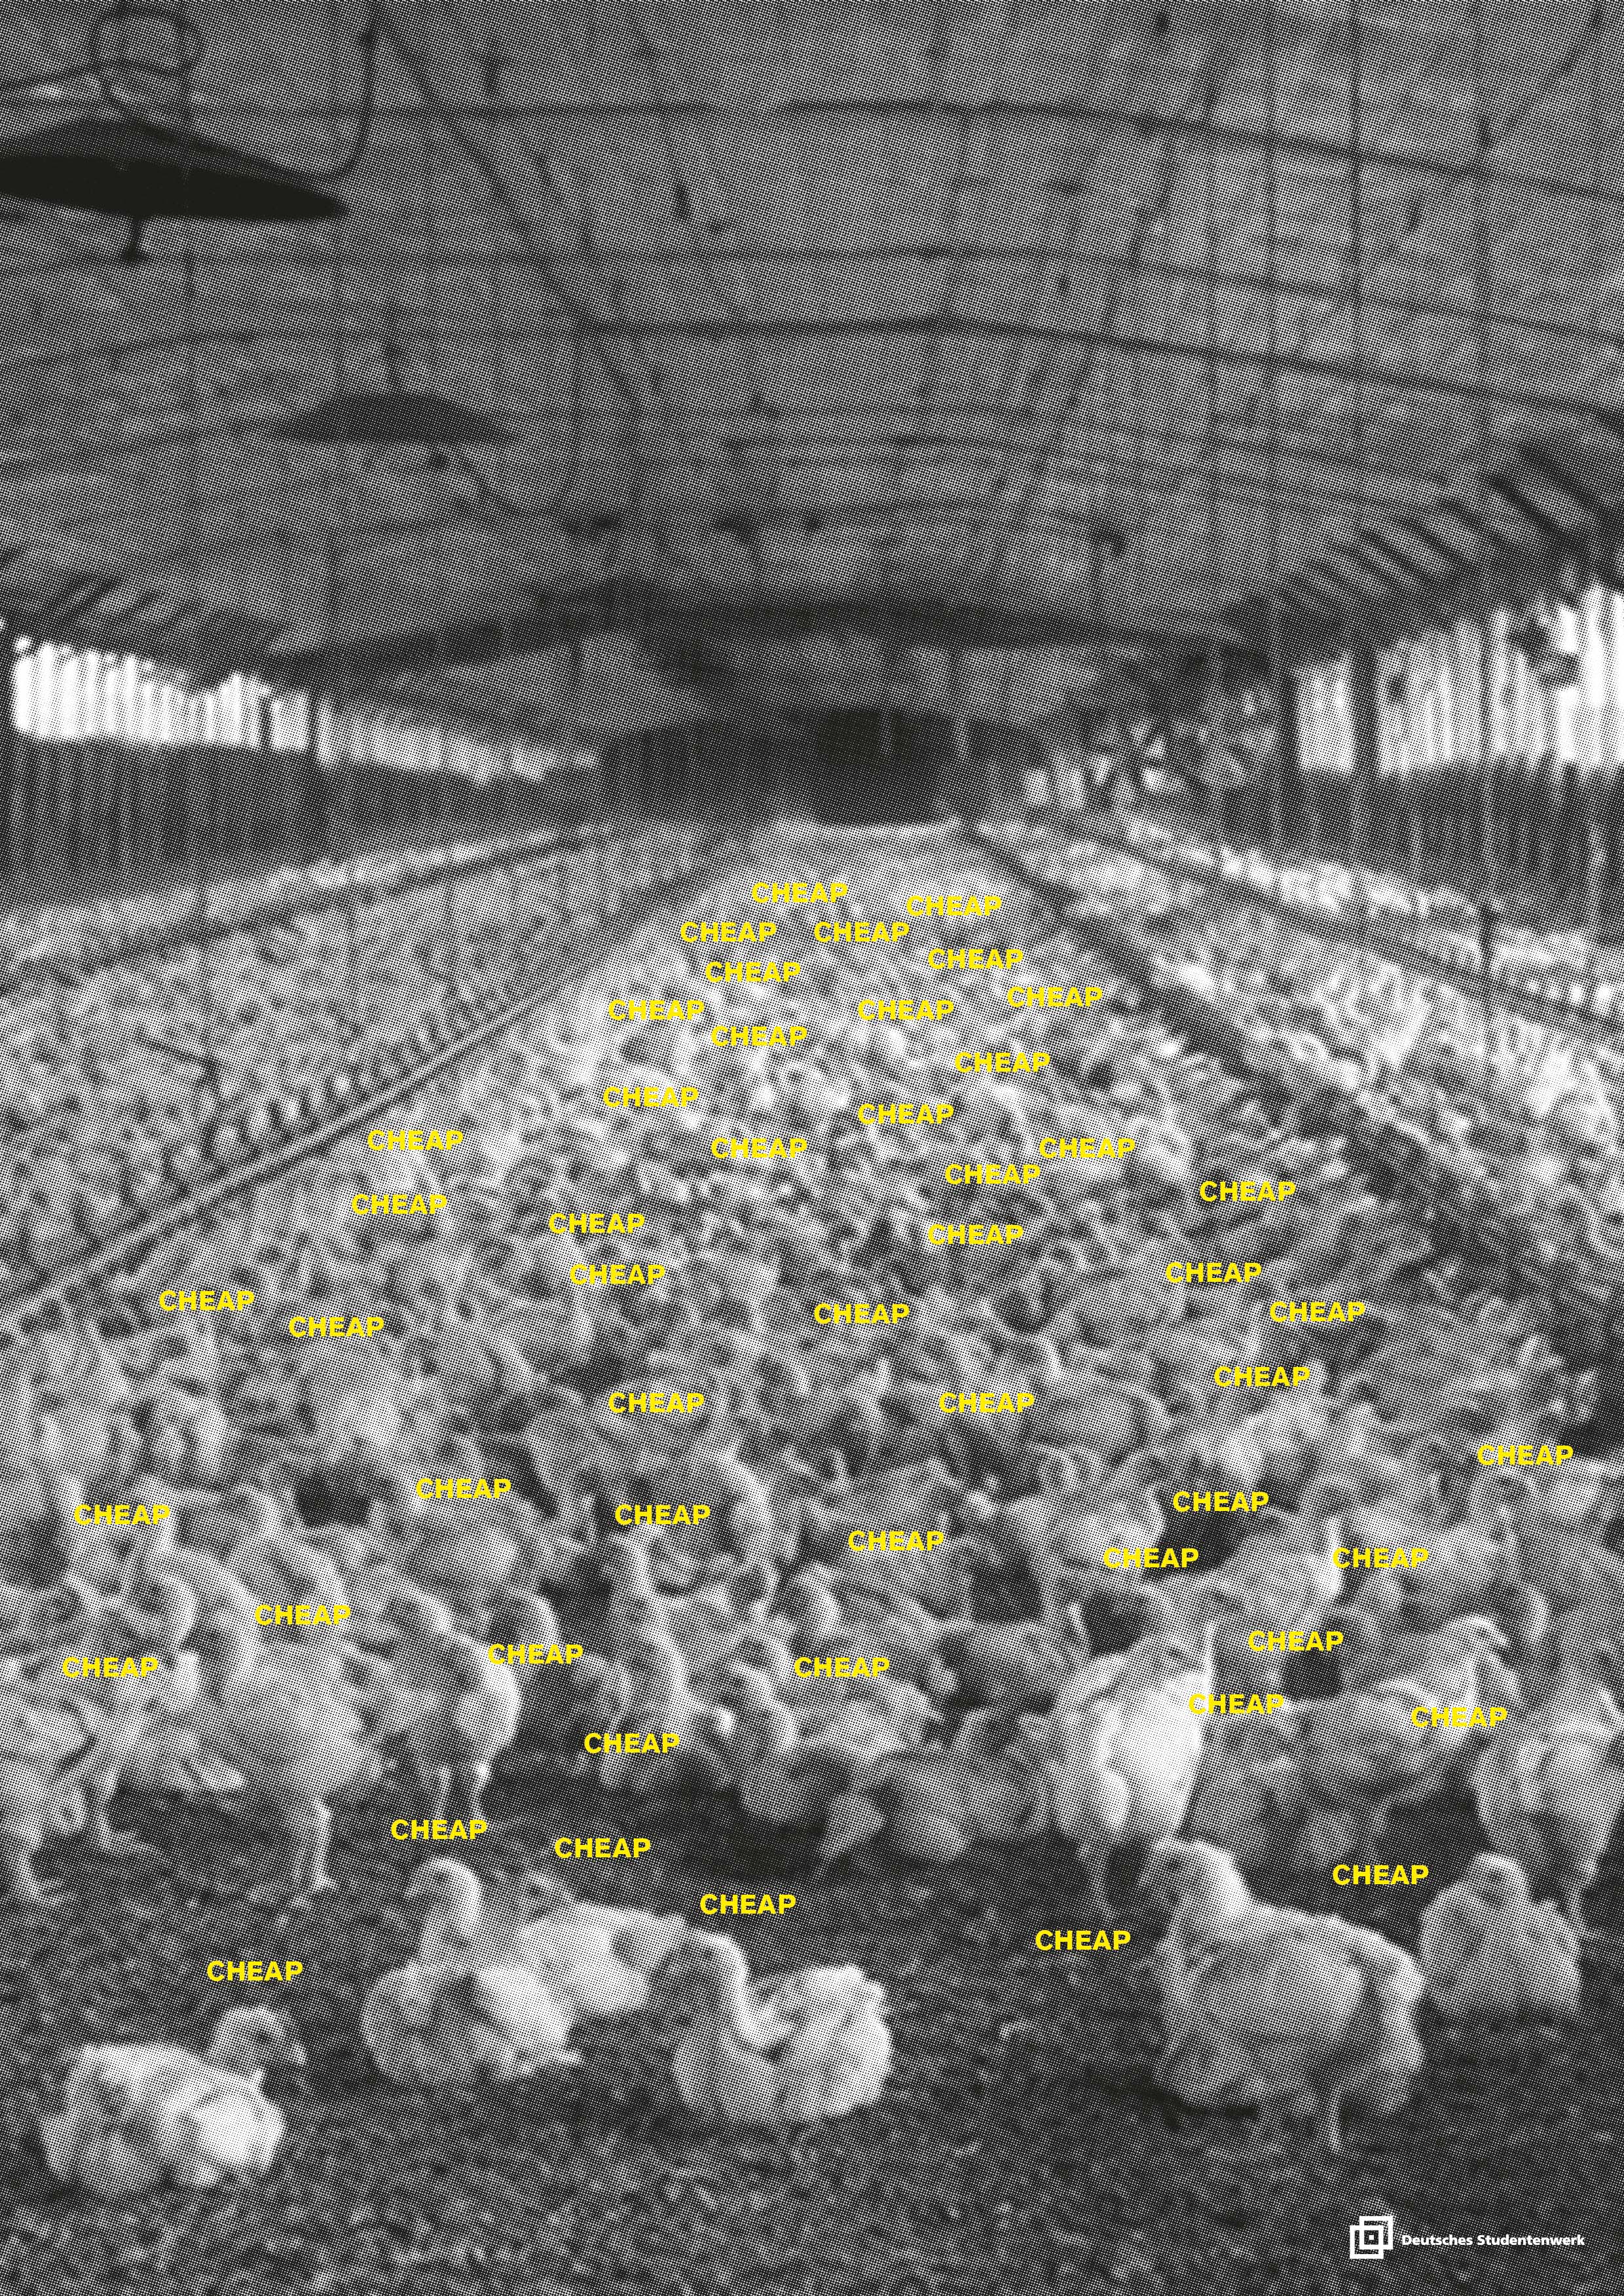 Plakatentwurf: Schwarz-weiß-Fotografie einer Hühnermastanlage von innen, darüber der vielfache Schriftzug pro Huhn "CHEAP"